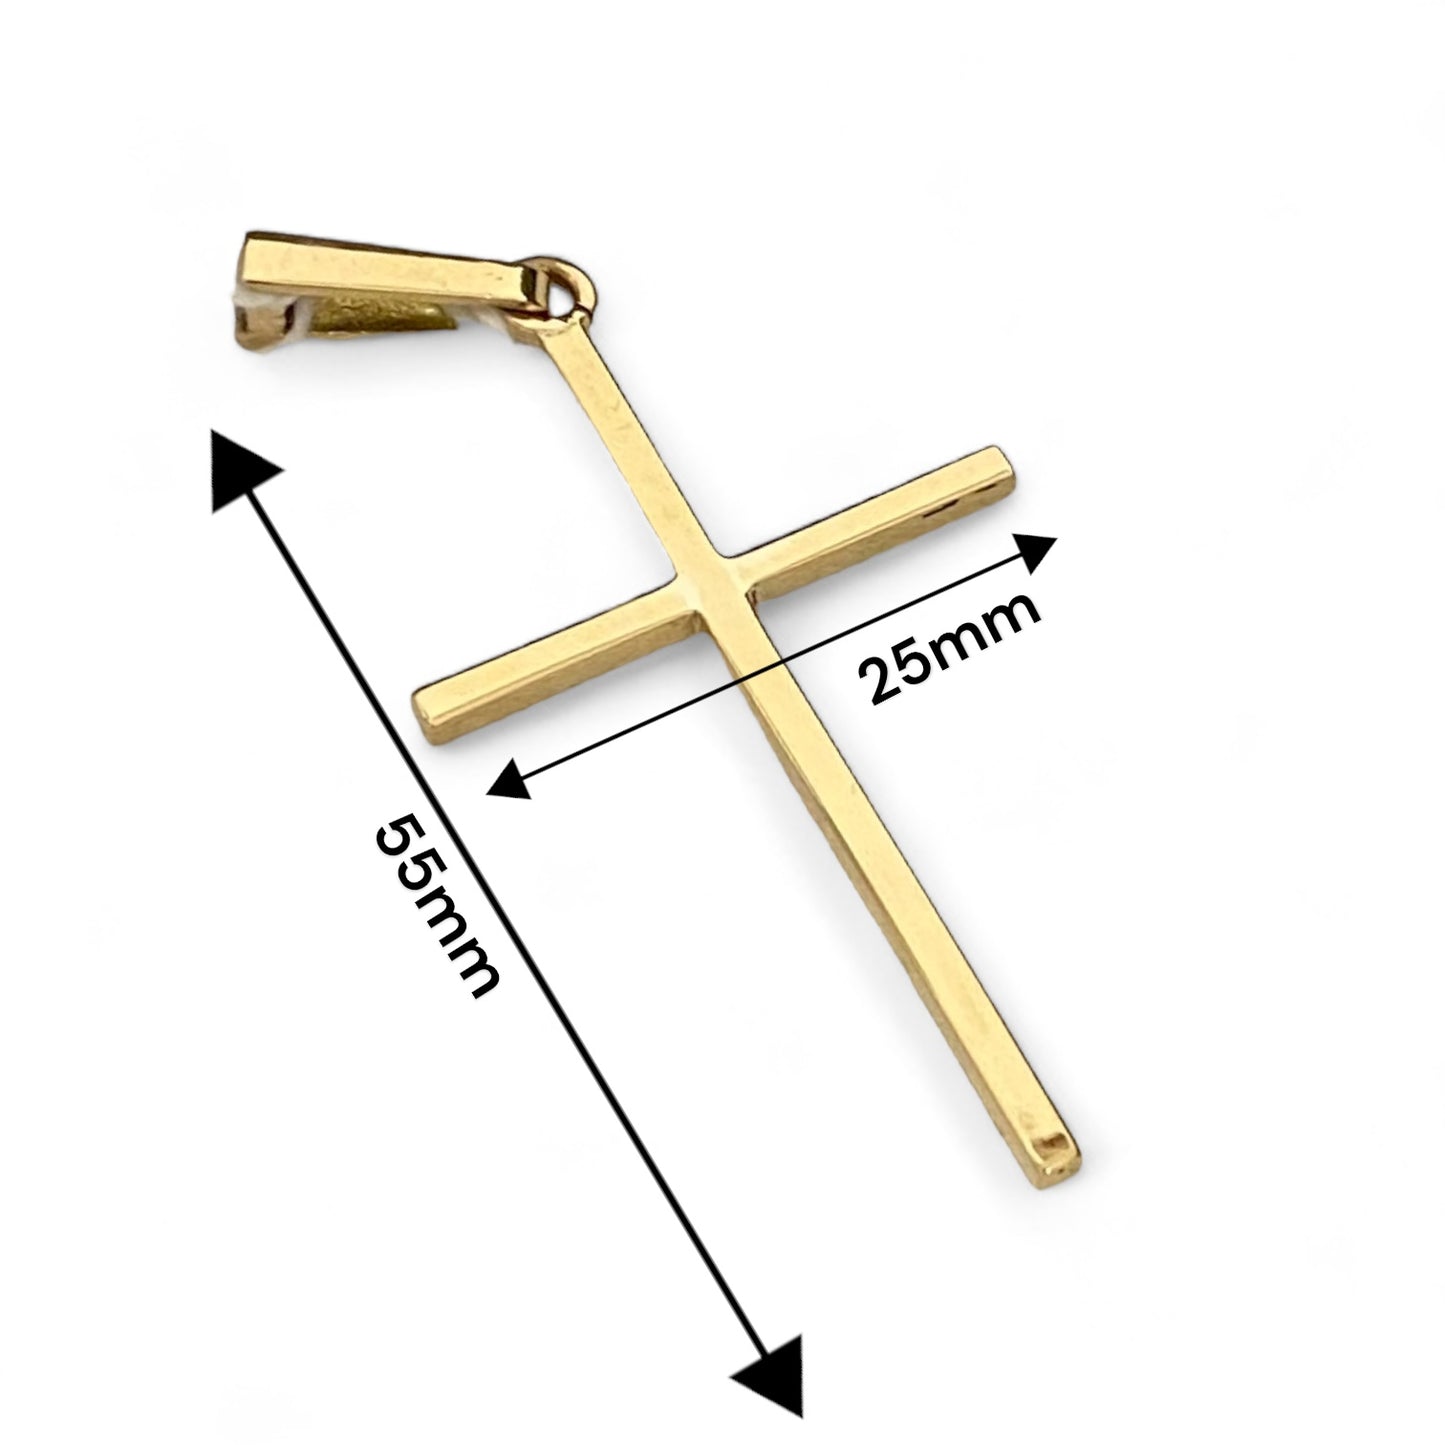 Colgante en forma de Cruz lisa realizada en oro amarillo de 18kt. Mide 5,5cm de largo y 2,5cm de ancho. Esta cruz unisex es un precioso símbolo religioso para hombre, mujer y comunión. Cruz de oro hombre, cruz para comunión.